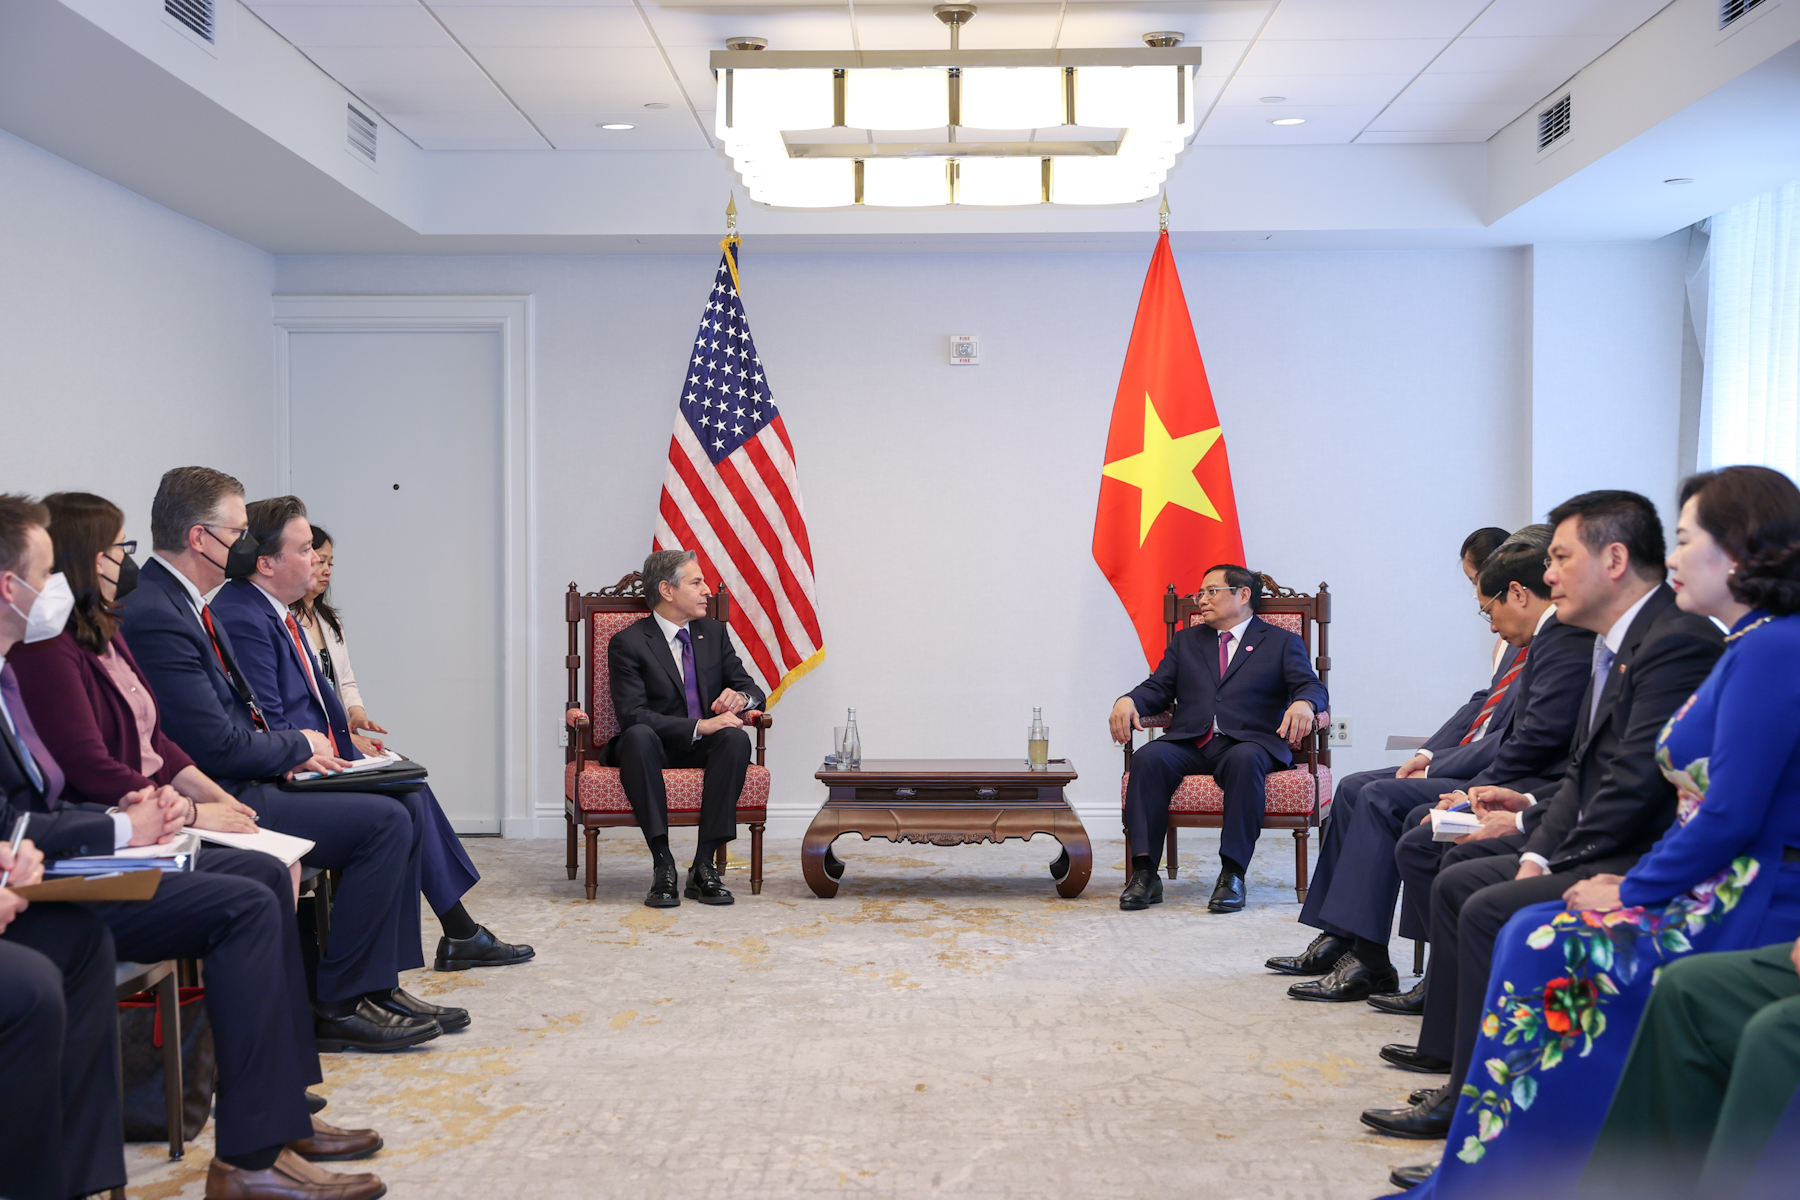 Ngoại trưởng Blinken: Hoa Kỳ ủng hộ Việt Nam mạnh, độc lập, thịnh vượng